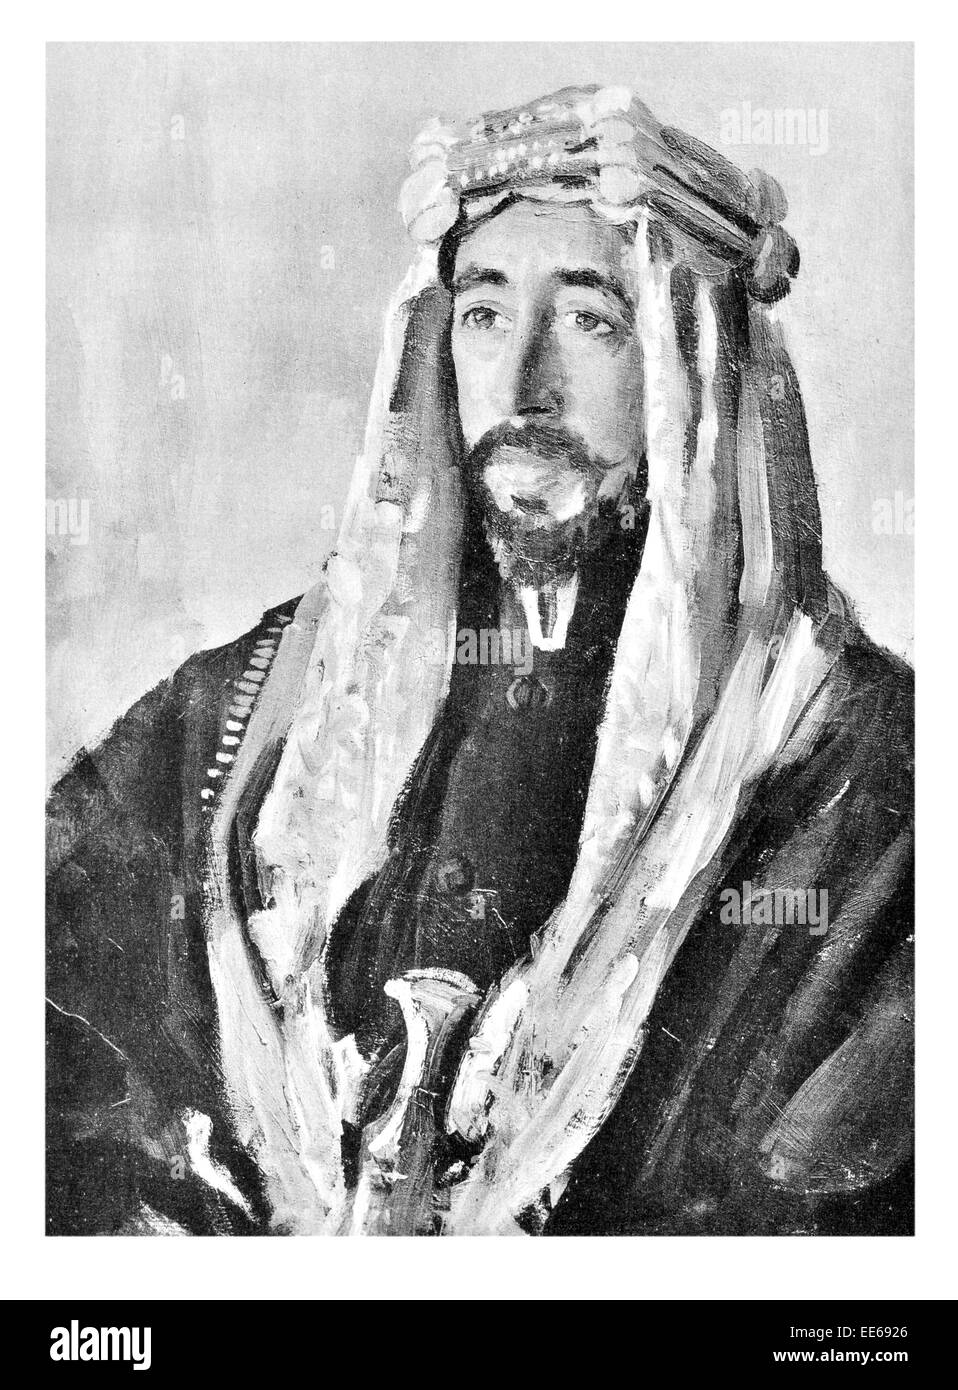 Ich bin Hussein Faisal bin Ali al-Hashimi König der arabischen Königreich von Syrien Großsyrien 1920 König des Irak haschemitischen Dynastie Stockfoto